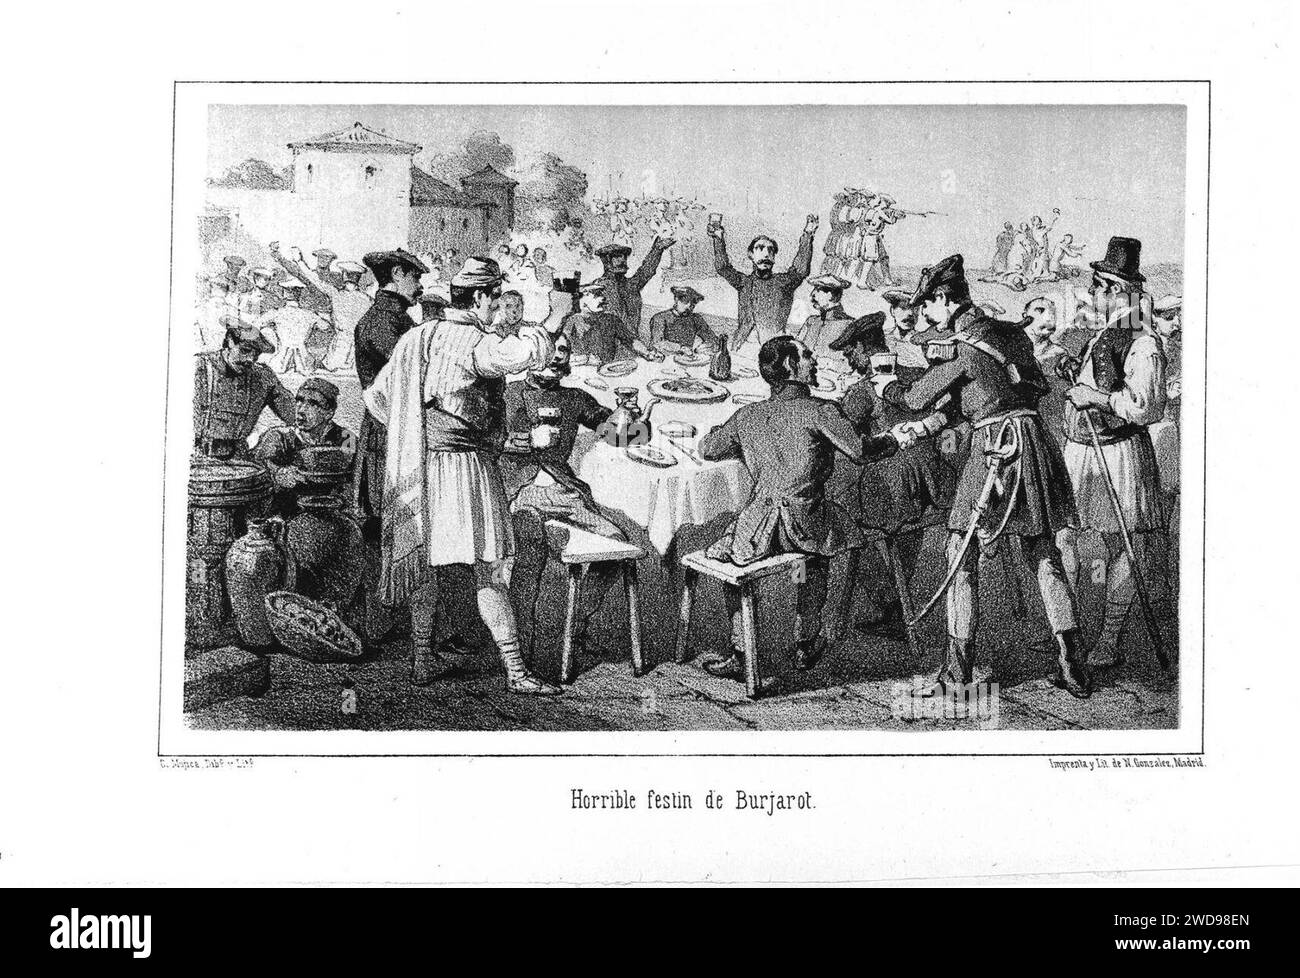 1871-1872, La estafeta de palacio (historia del último reinado), schreckliche festín de Burjarot. Stockfoto